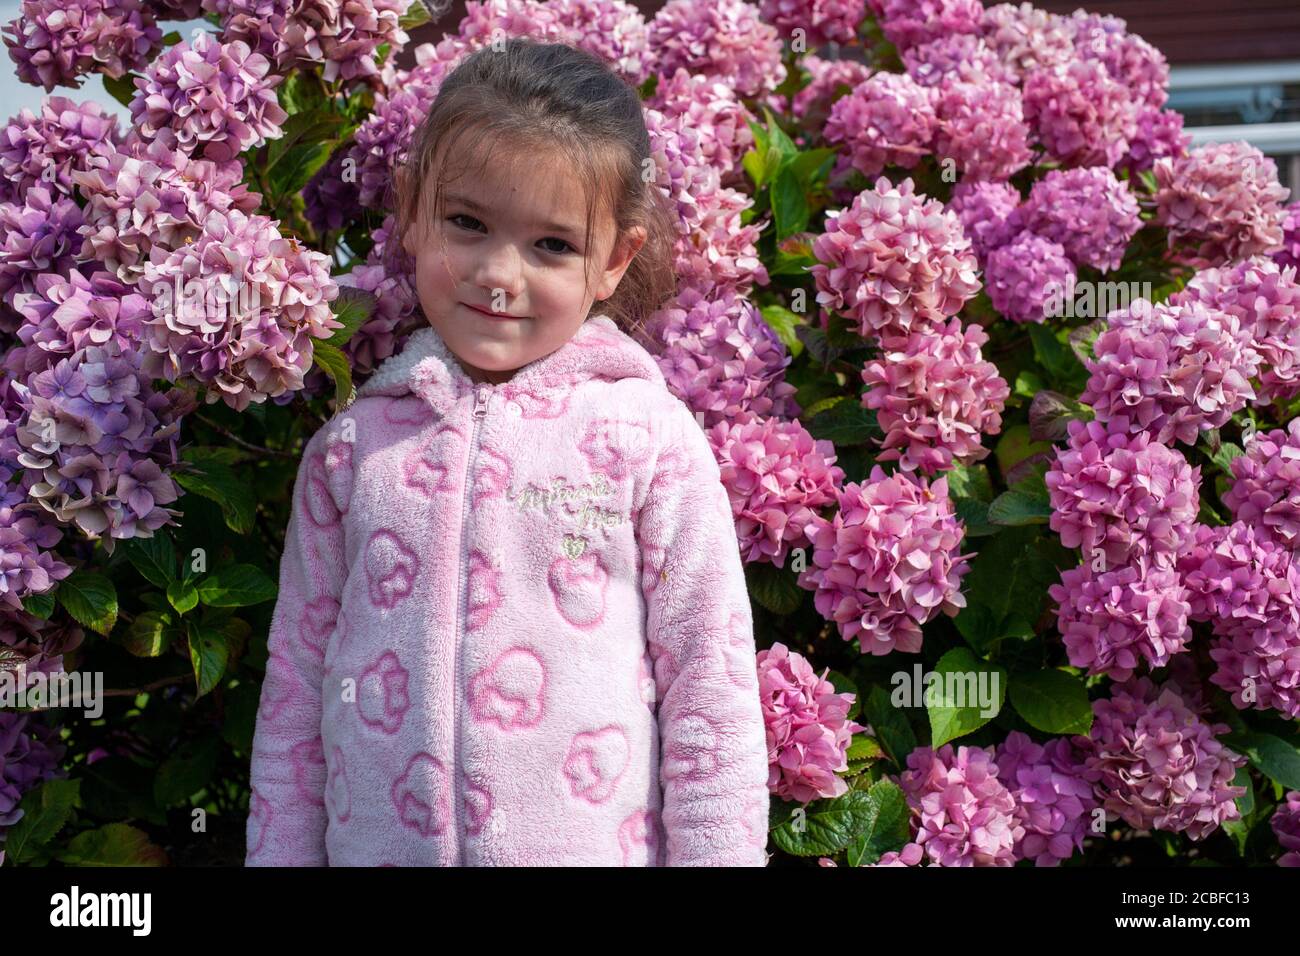 La bambina di quattro anni, vestita di una donnina rosa, si trova di fronte ad una pianta di Hydrangea rosa. Lancashire, Inghilterra, Regno Unito Foto Stock